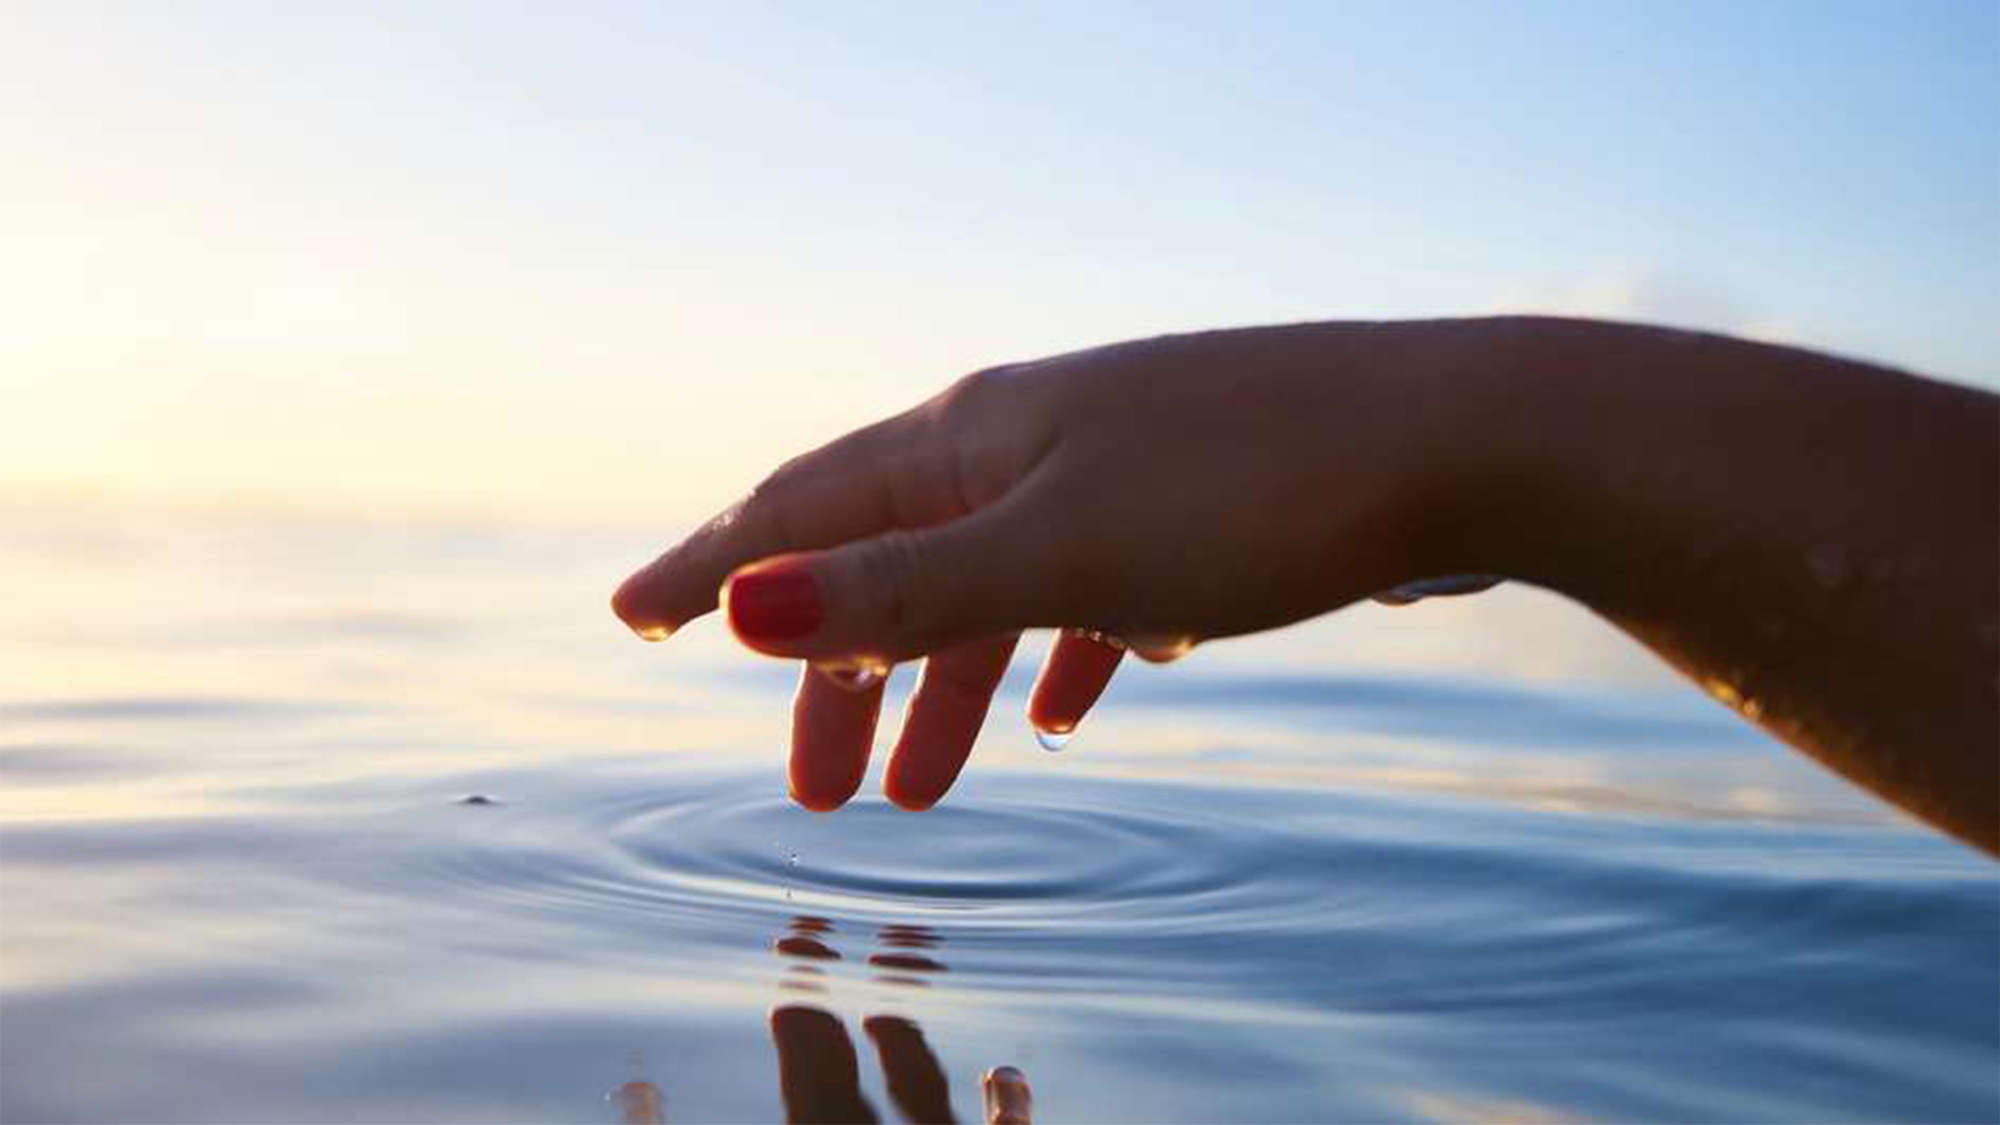 Symbolbild: Eine Hand greift ins Wasser